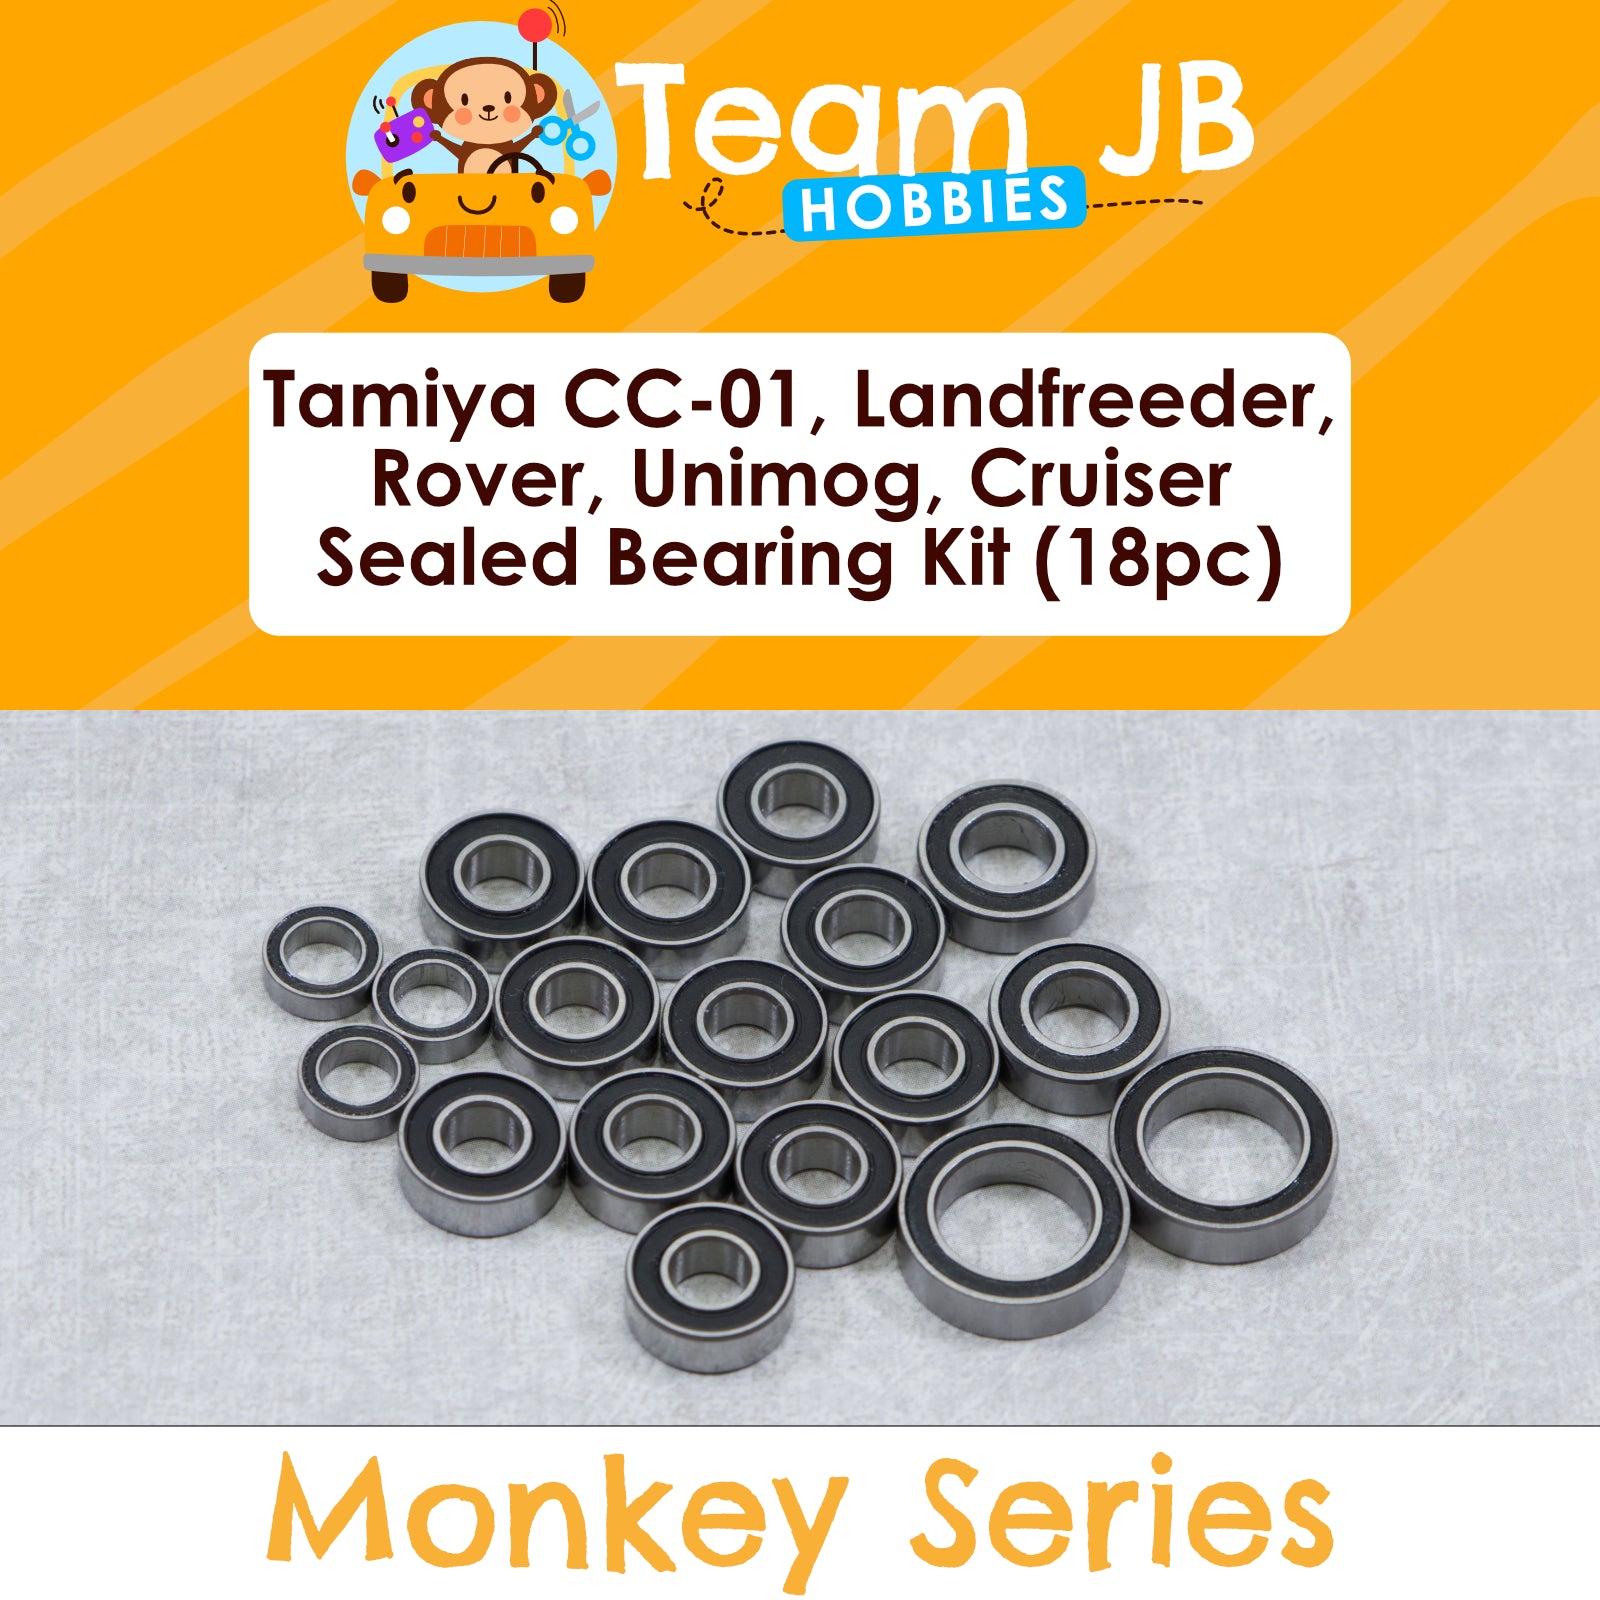 Tamiya CC-01, Landfreeder, Rover, Unimog, Cruiser, Wrangler - Sealed Bearing Kit